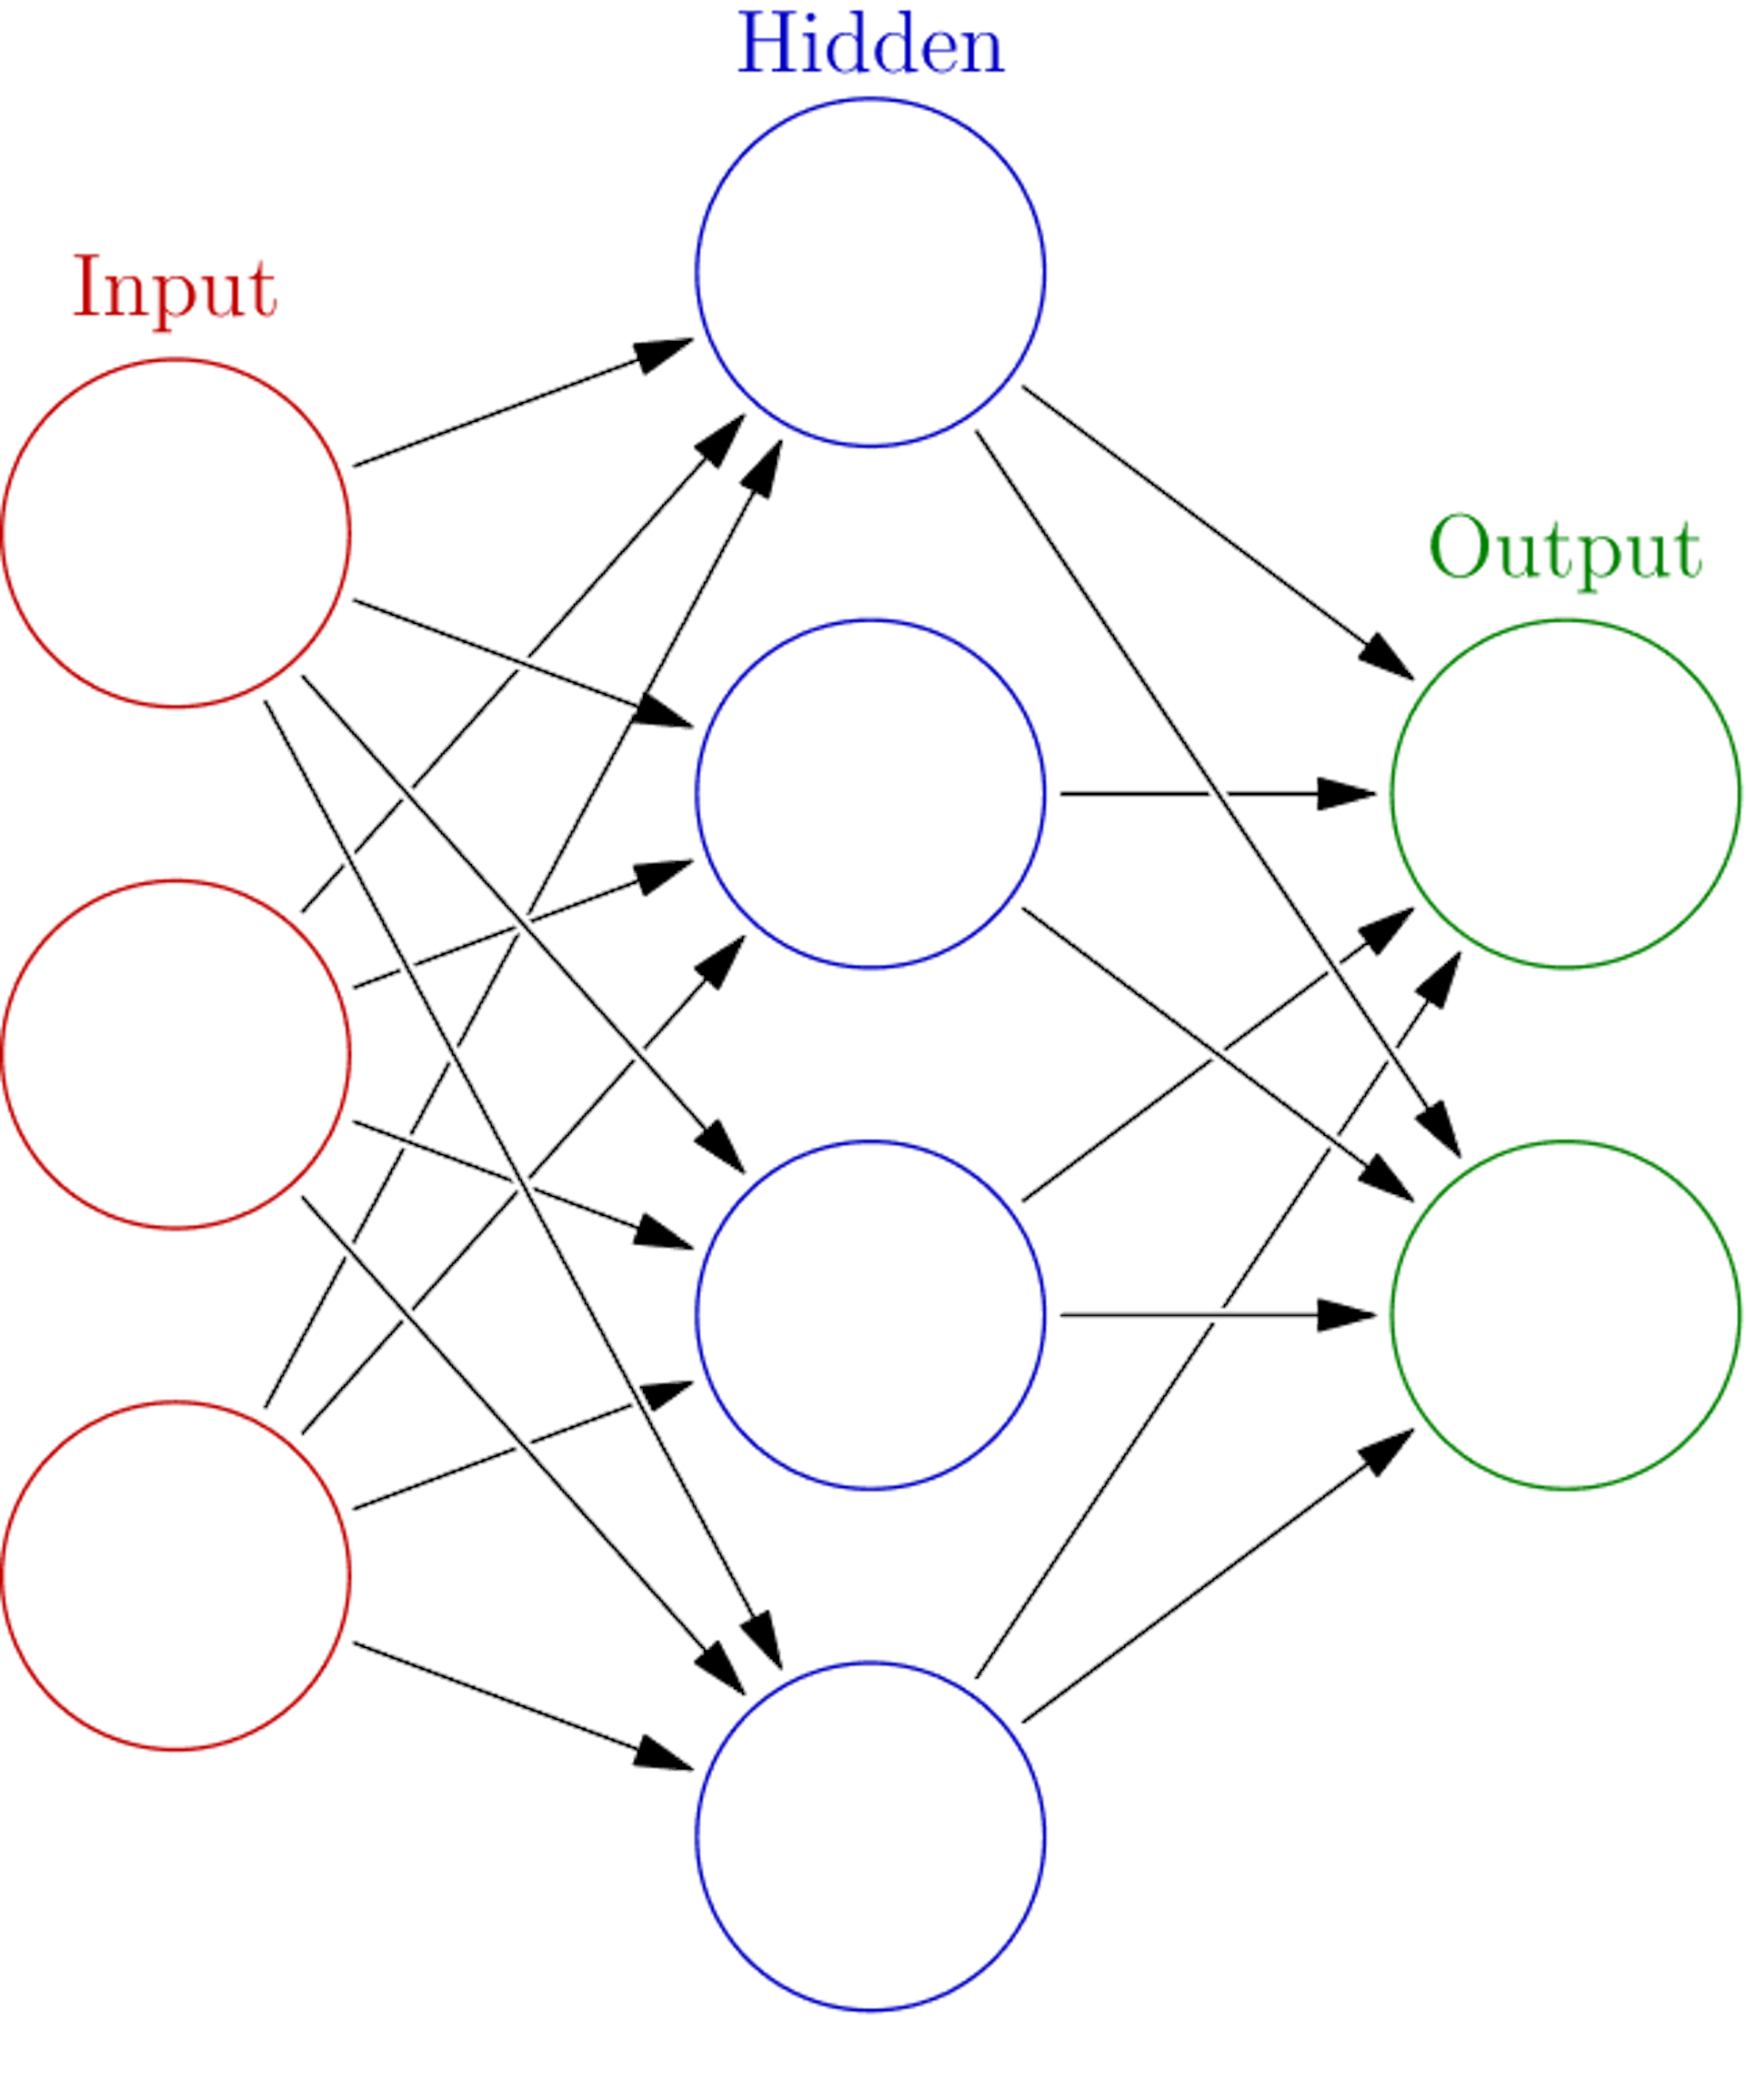 Grundlegende Darstellung der Funktionsweise eines neuronalen Netzwerks (Original: https://en.wikipedia.org/wiki/Neural_network_(machine_learning)#/media/File:Colored_neural_network.svg)